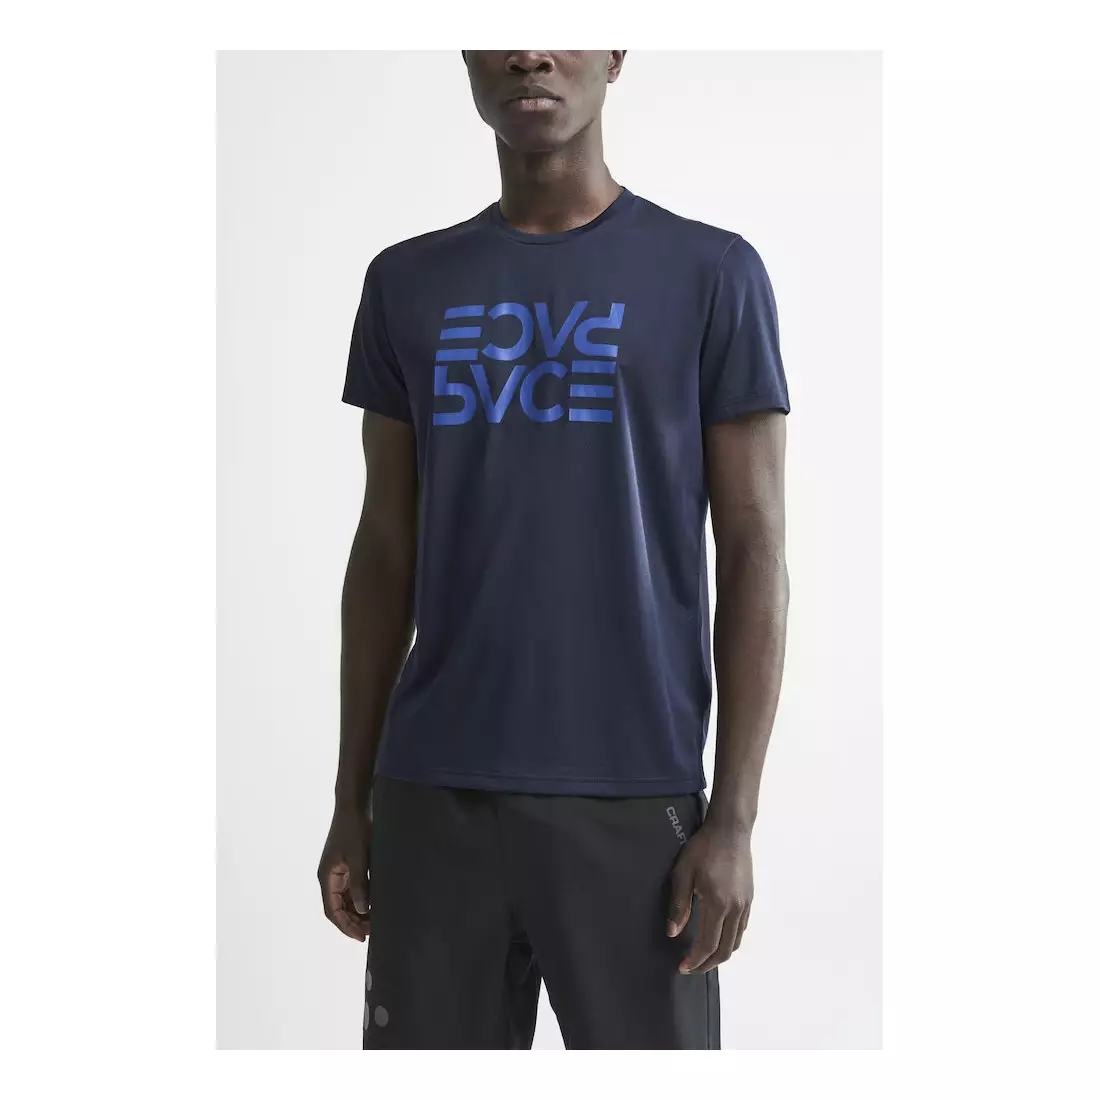 CRAFT EAZE MESH pánské sportovní / běžecké tričko tmavě modré 1907018-396000